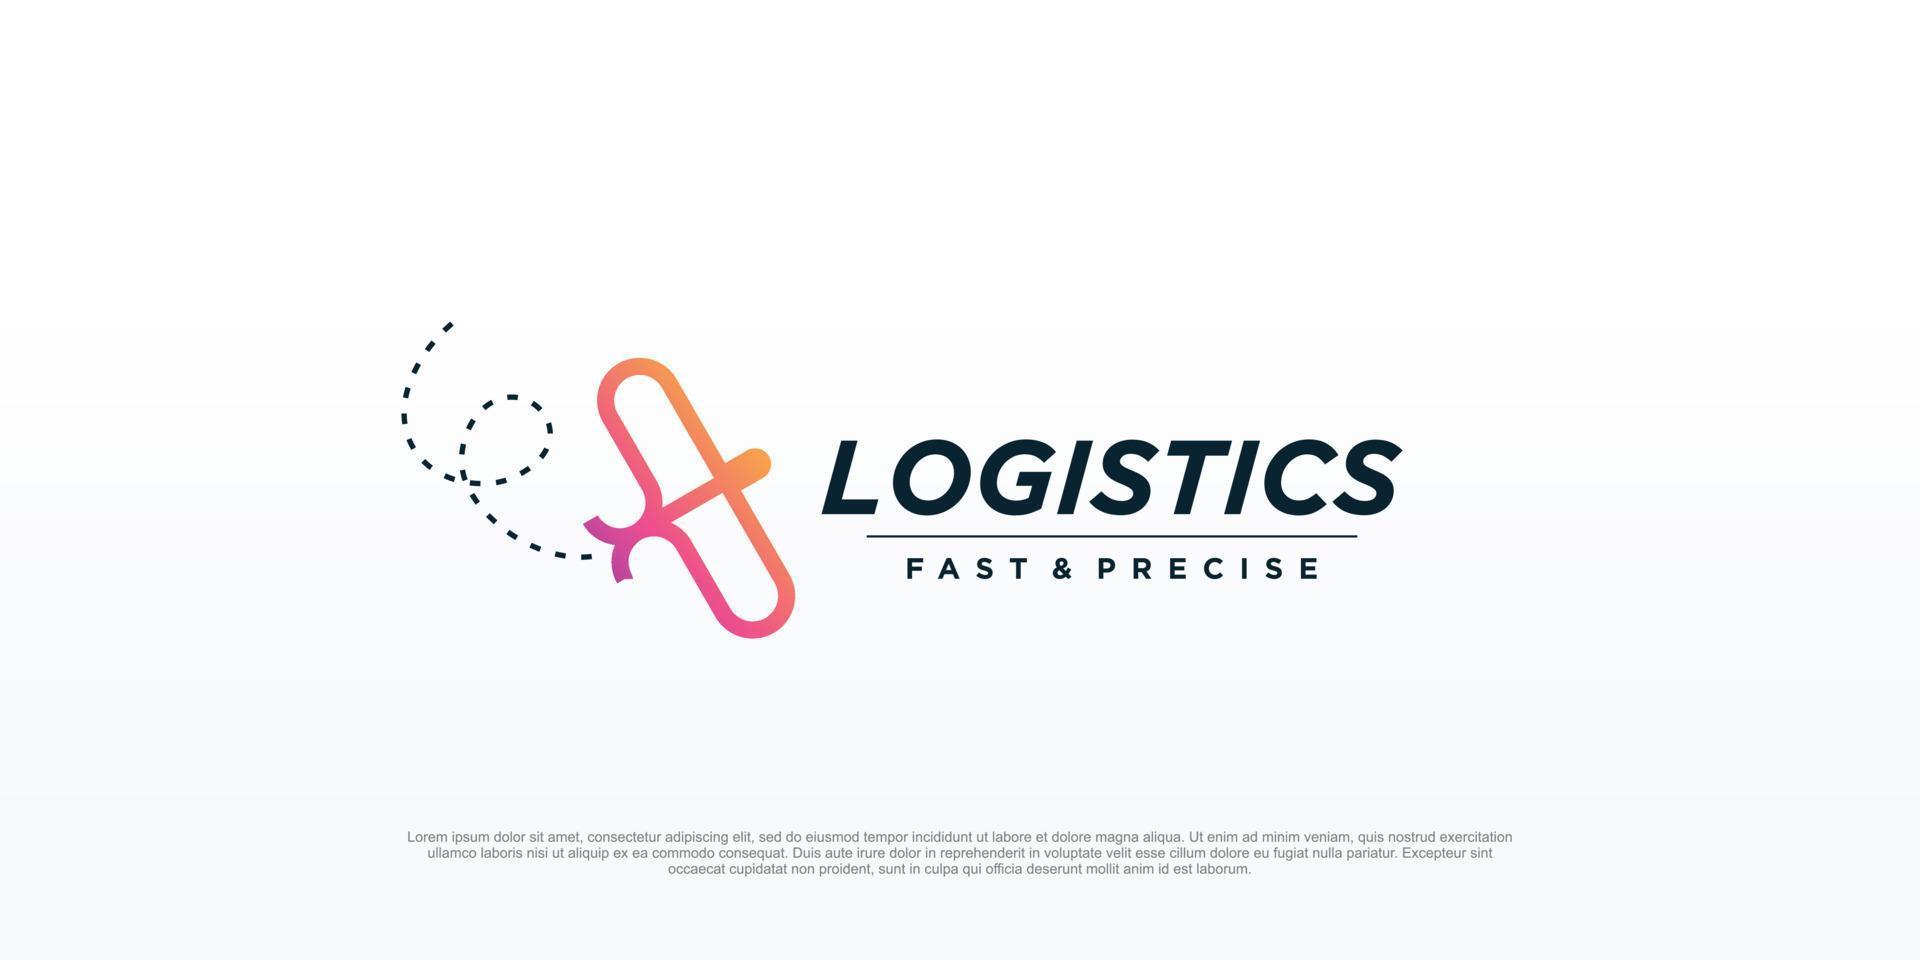 Logistics logo design with cute plane concept Premium Vector